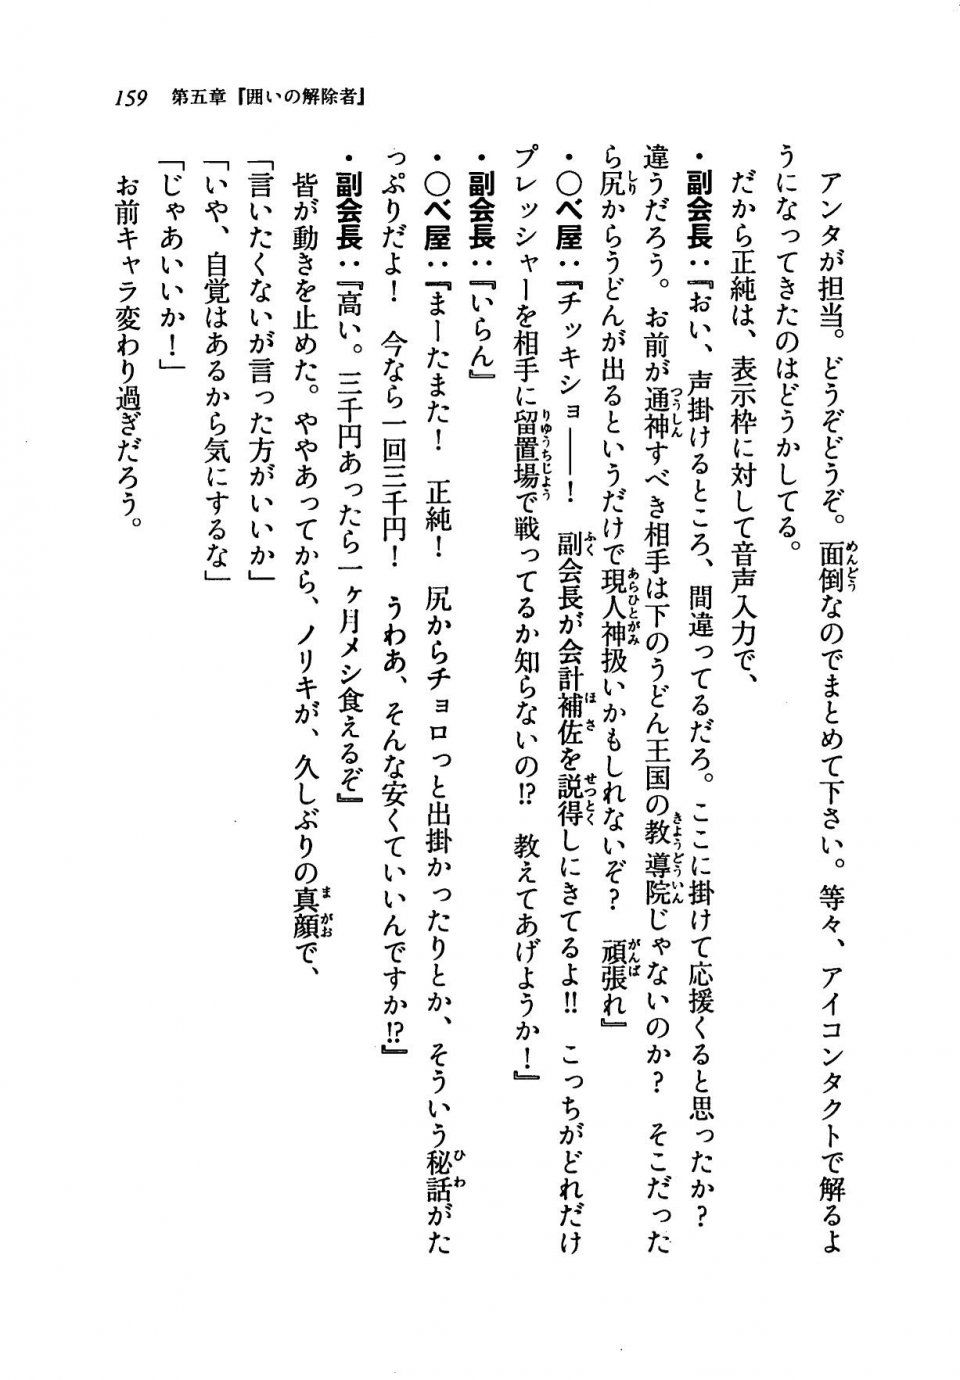 Kyoukai Senjou no Horizon LN Vol 19(8A) - Photo #159